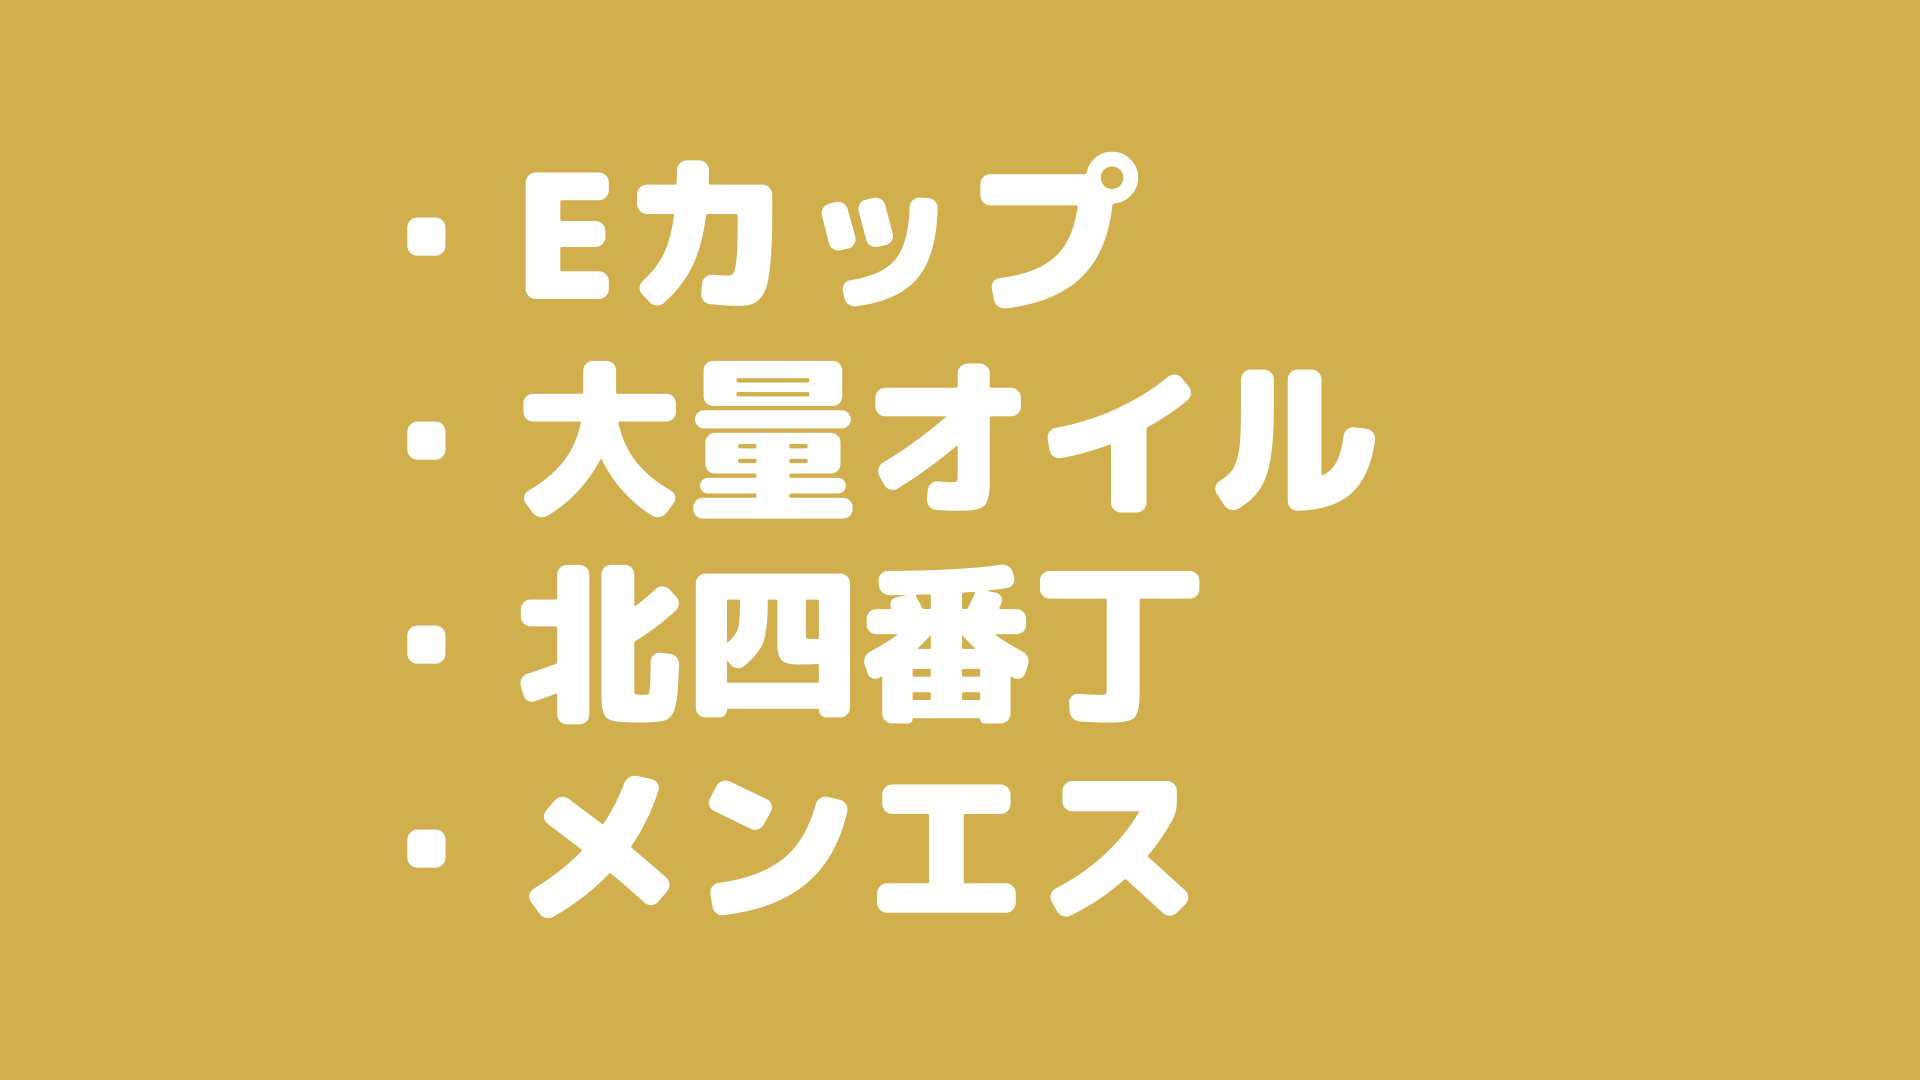 【〇〇〇責め】仙台のメンズエステで巨乳セラピストさんが大量オイルのキワキワマッサージ